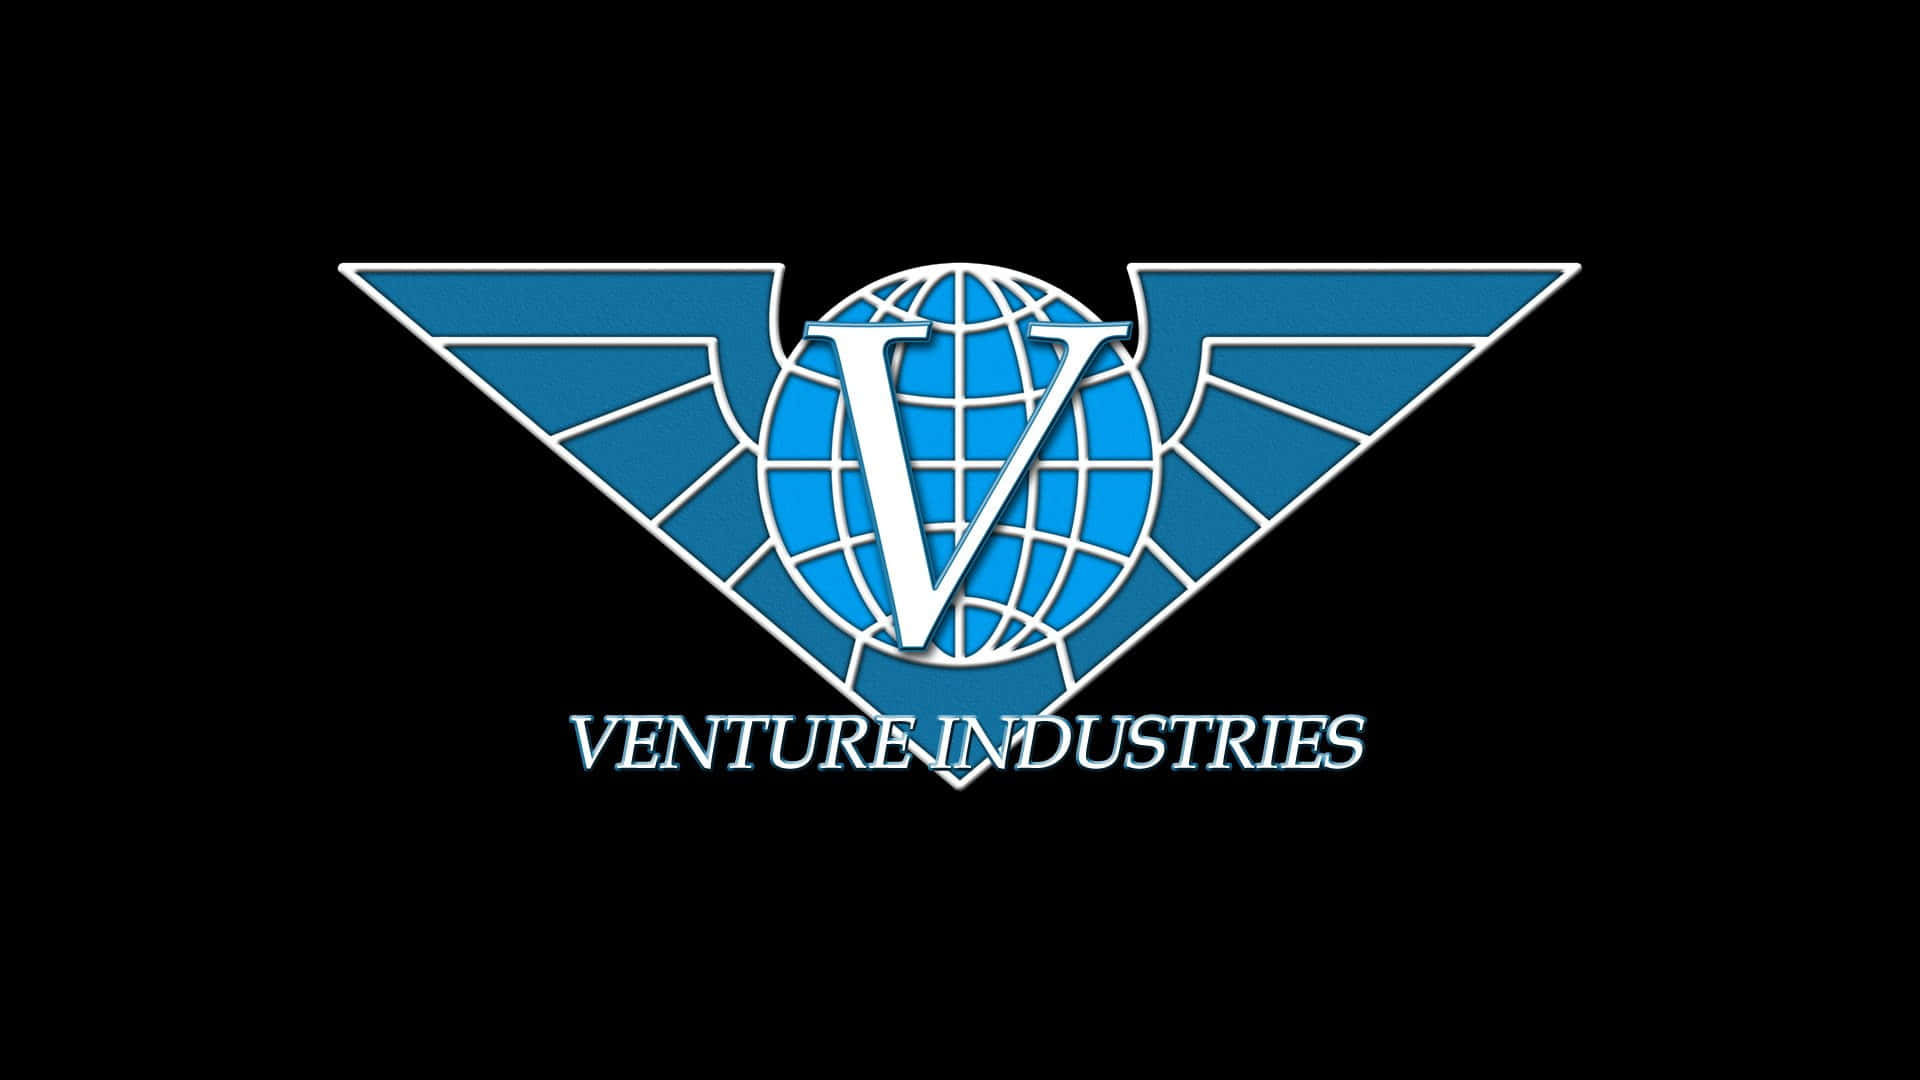 Venture Industries Logo Wallpaper